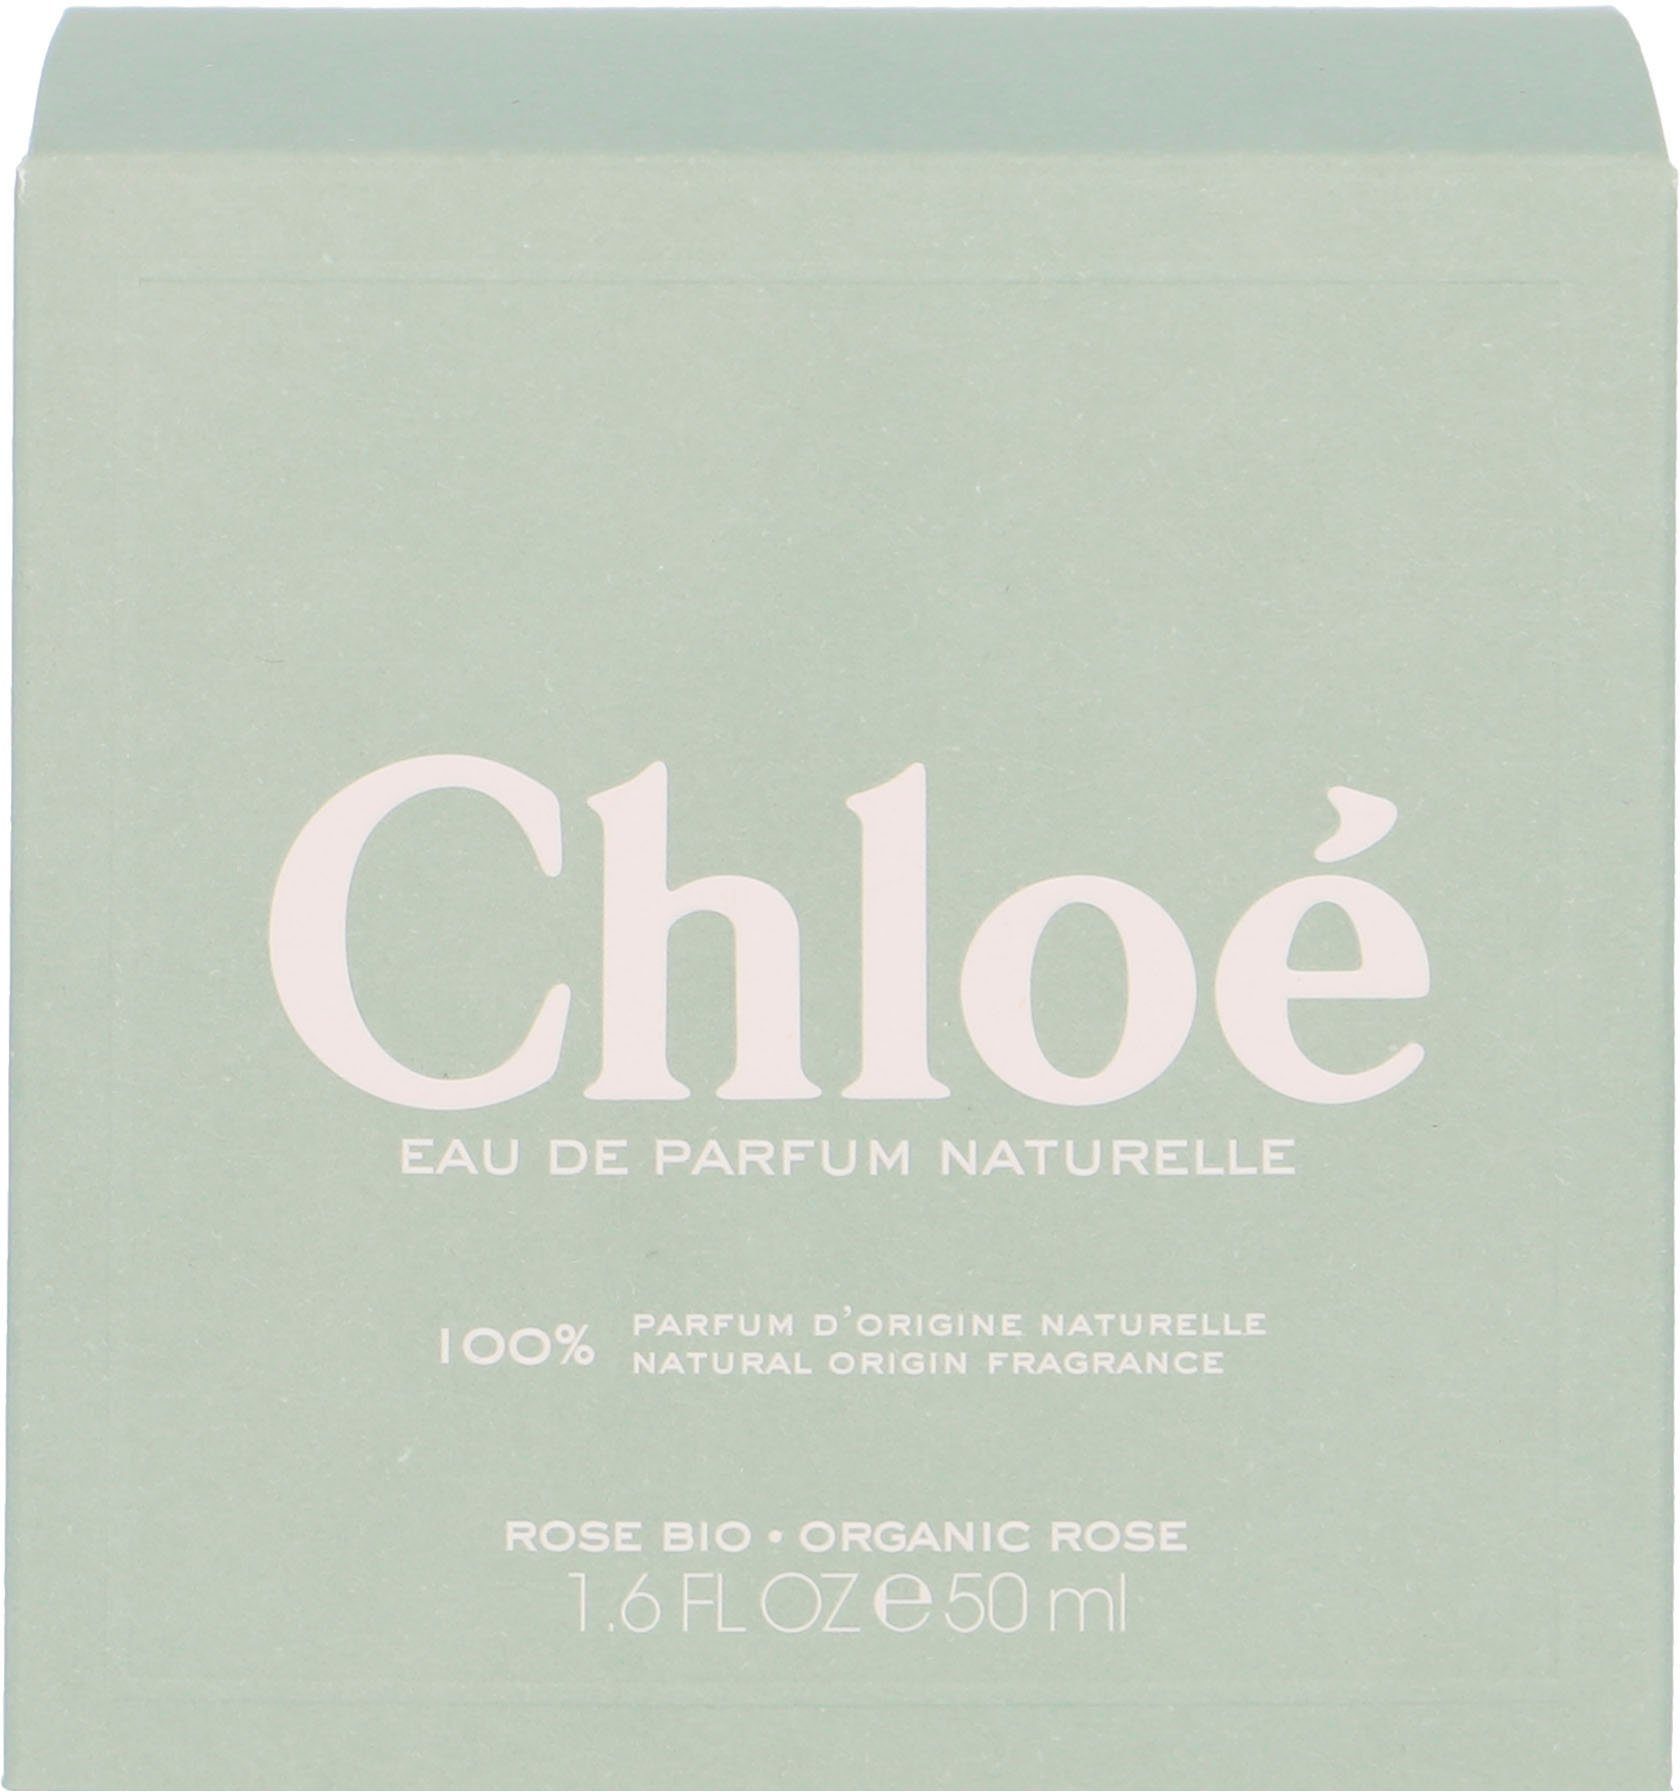 Chloé Parfum de Naturelle Eau Signature